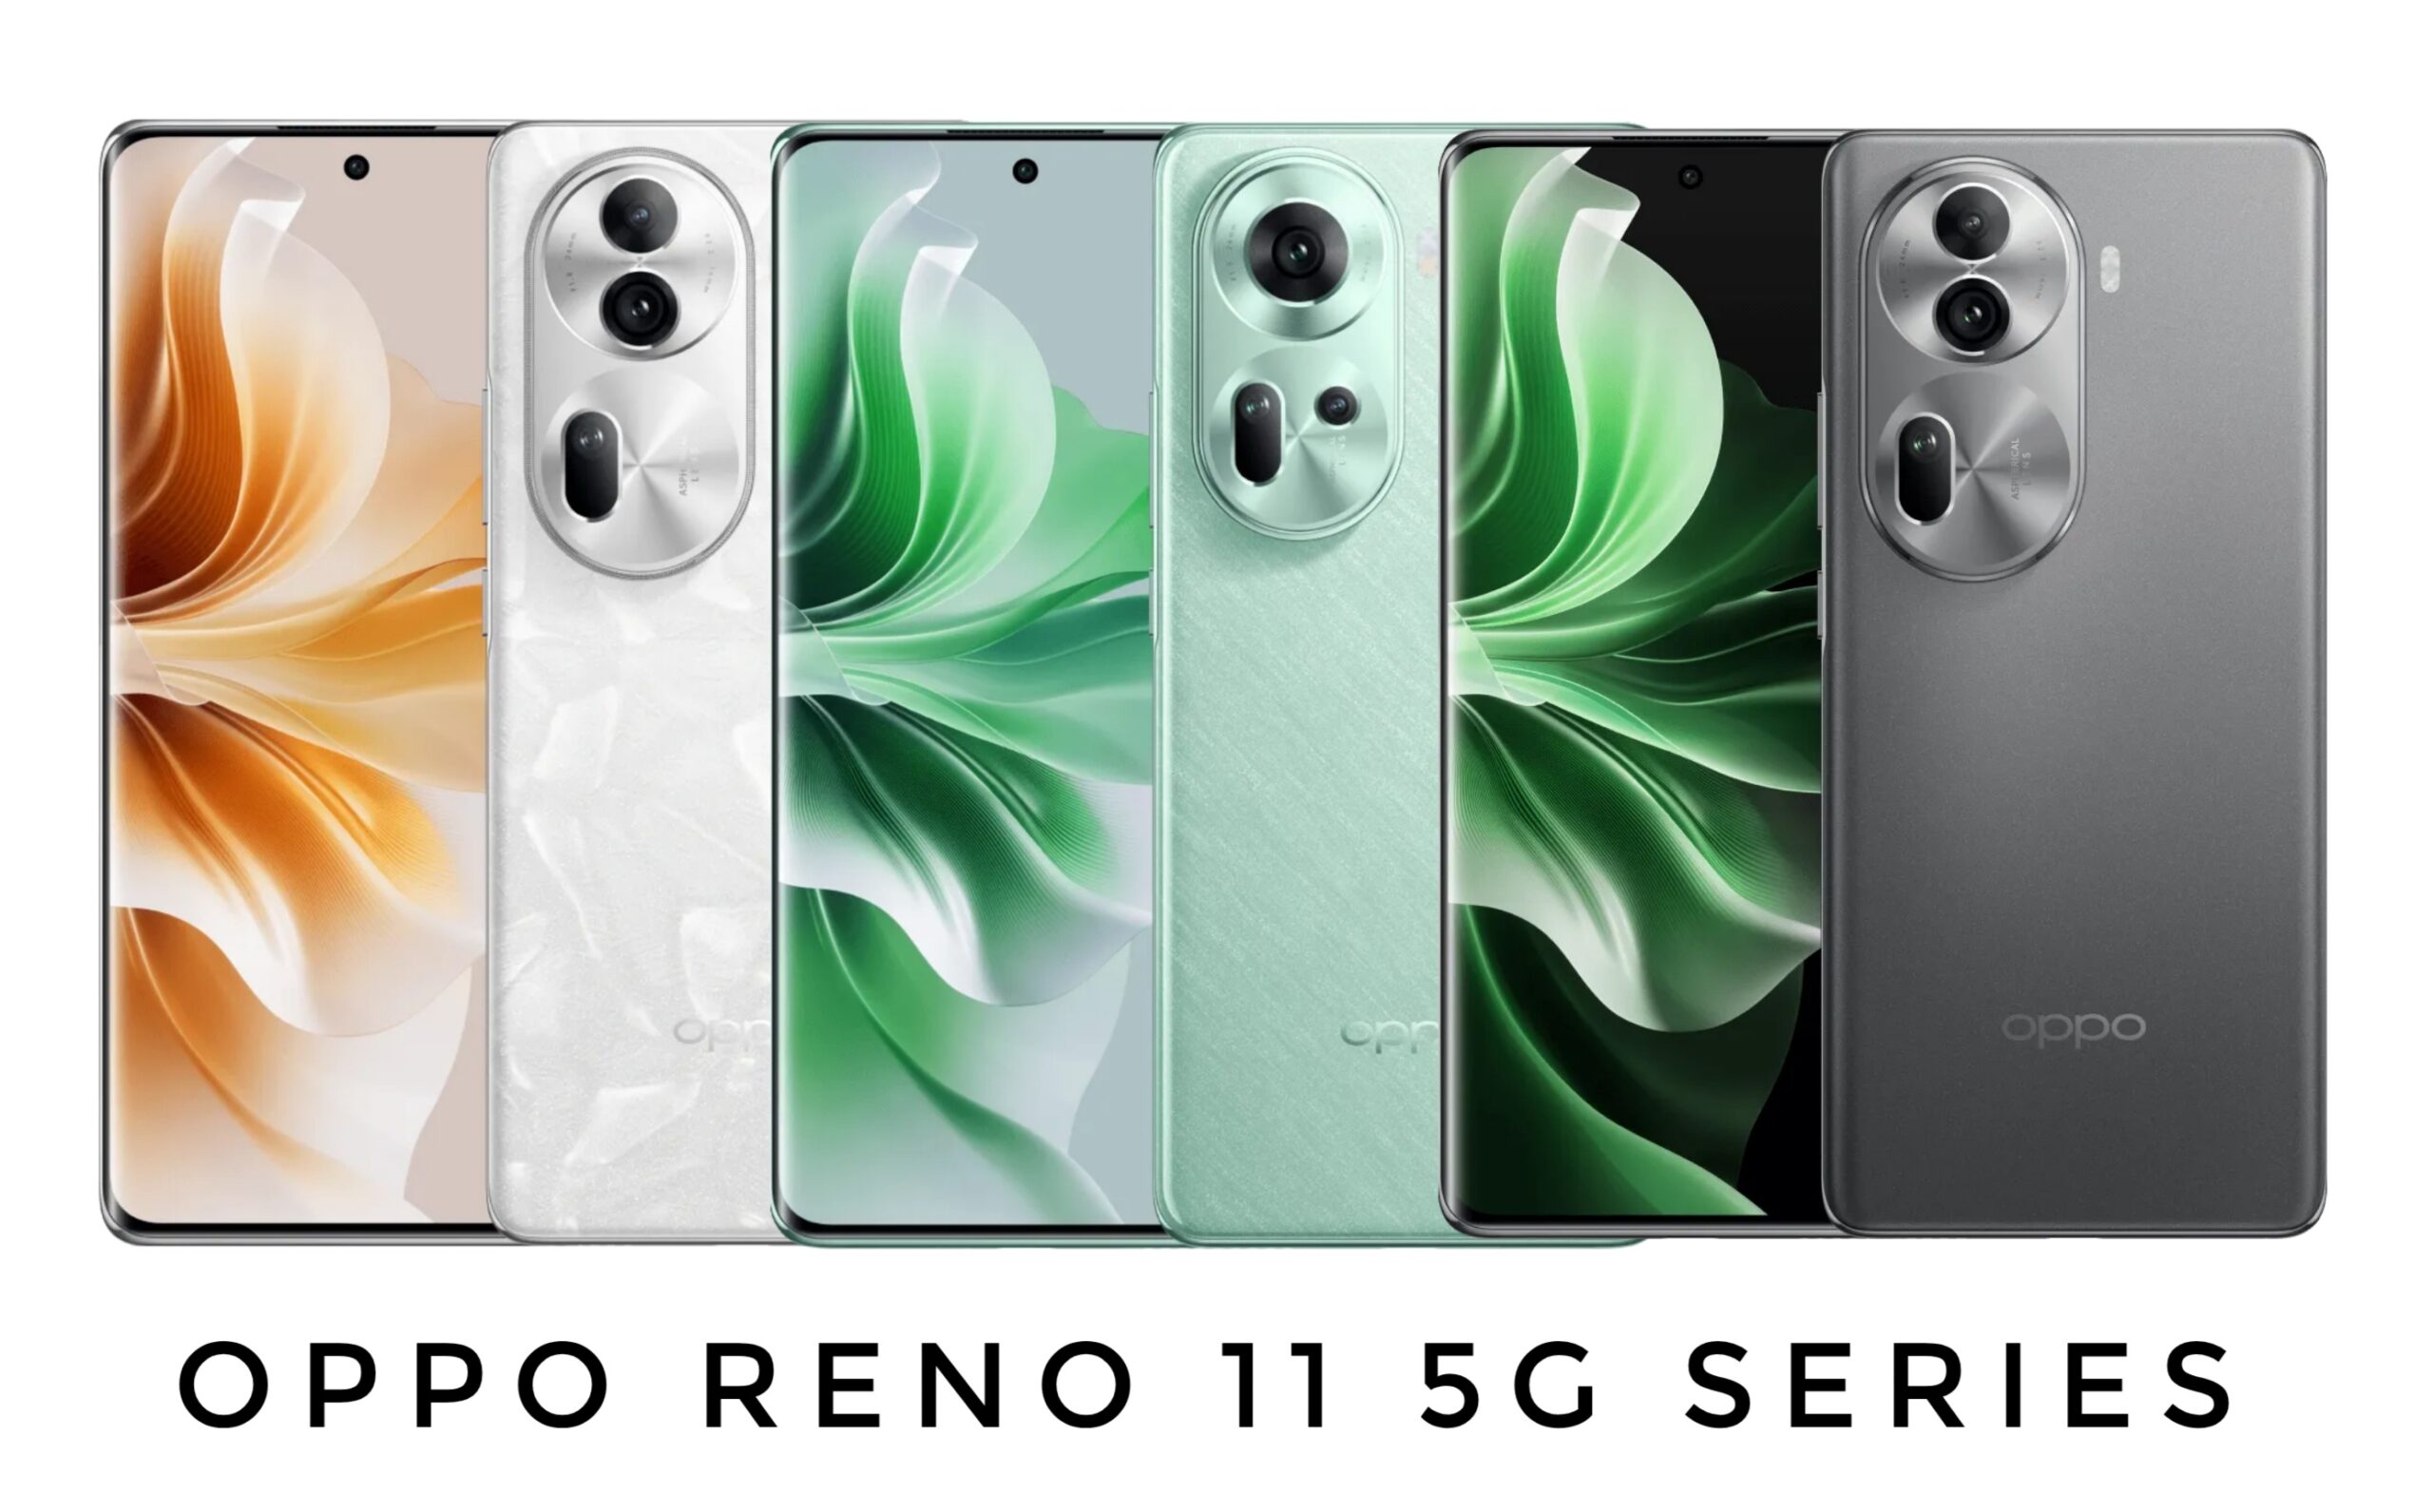 OPPO Reno 11 5g Series